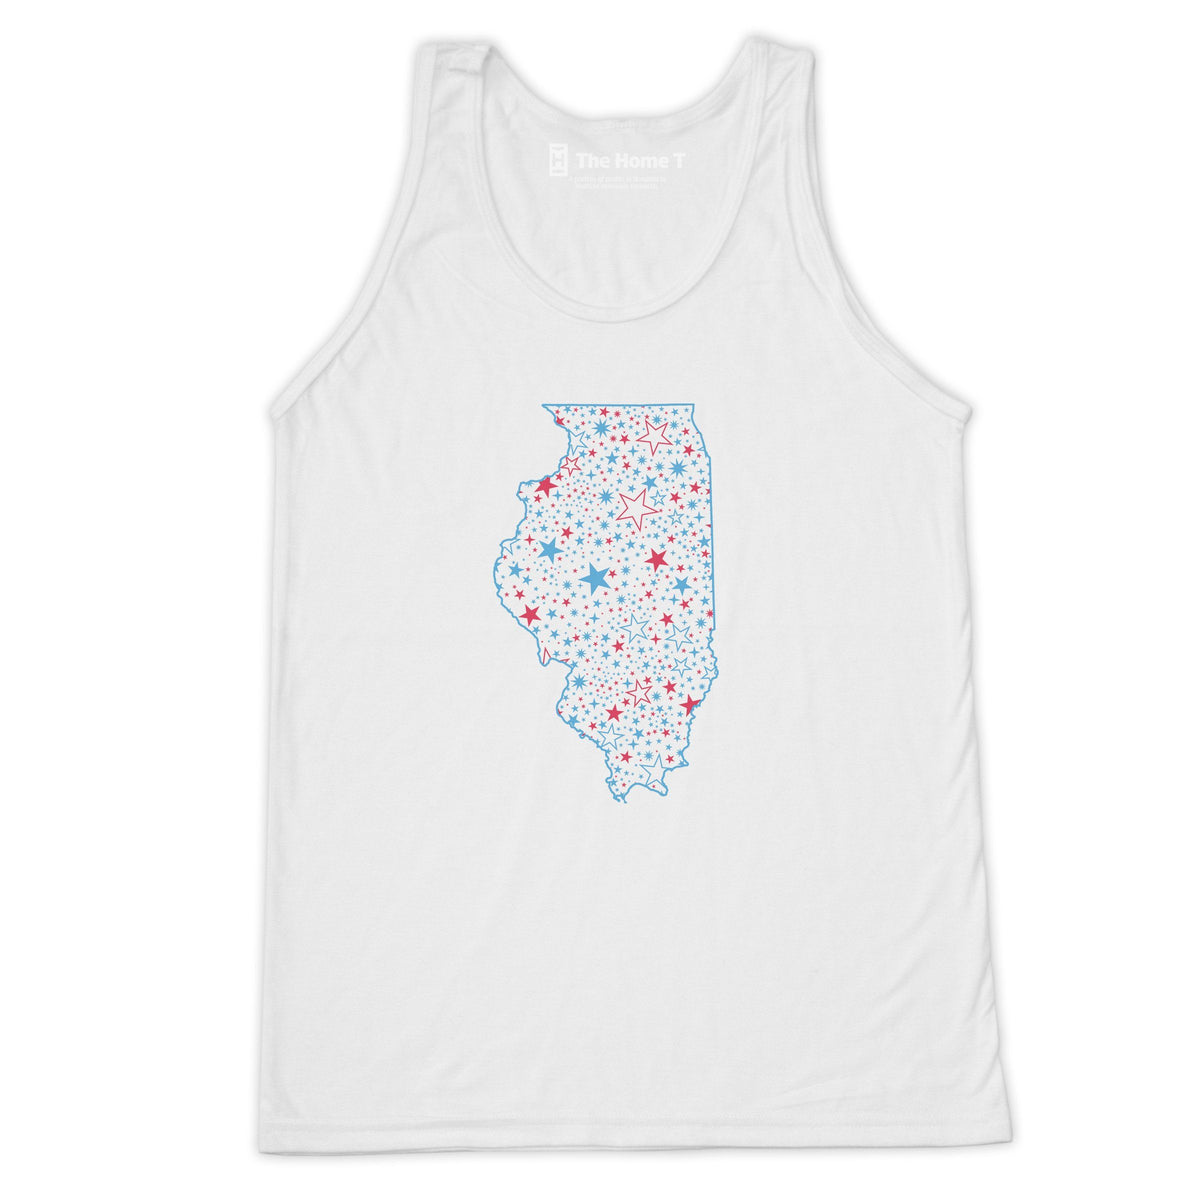 Illinois Star State